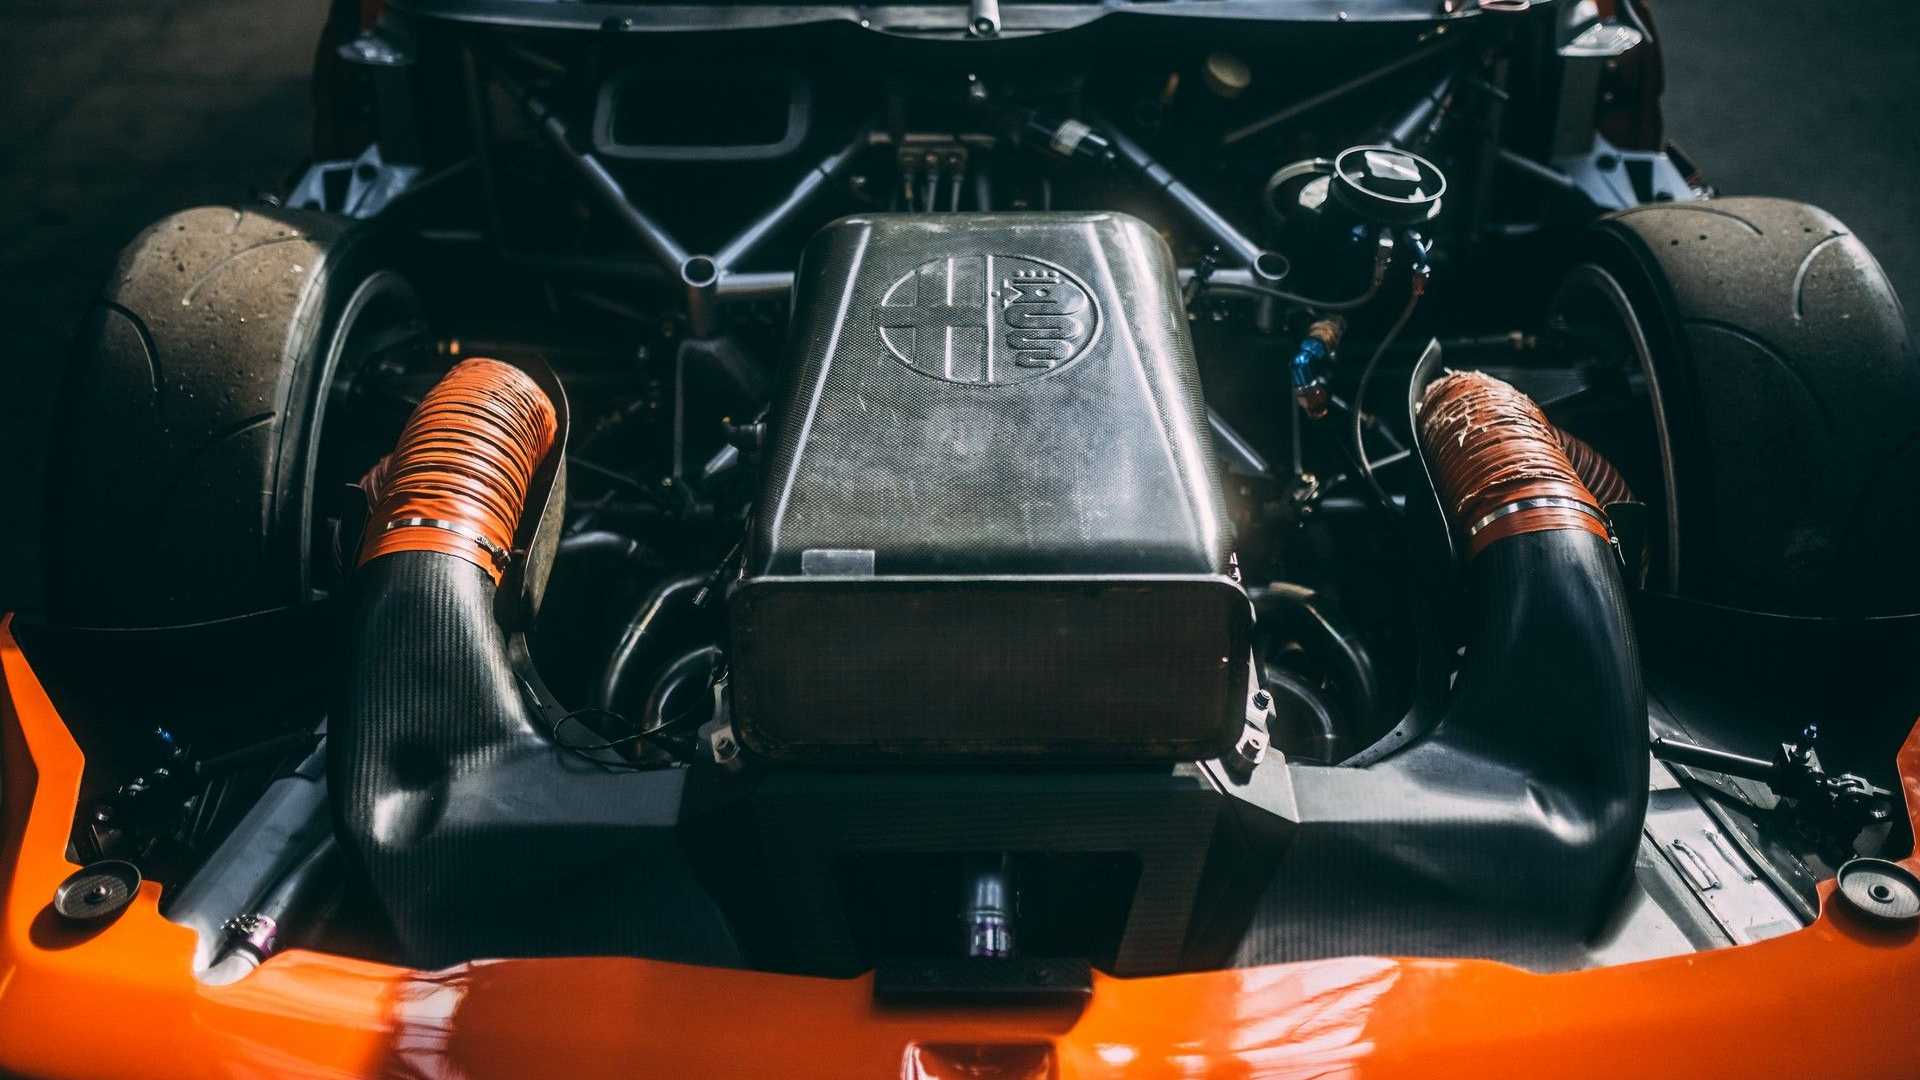 Alfa Romeo 155 V6 Ti